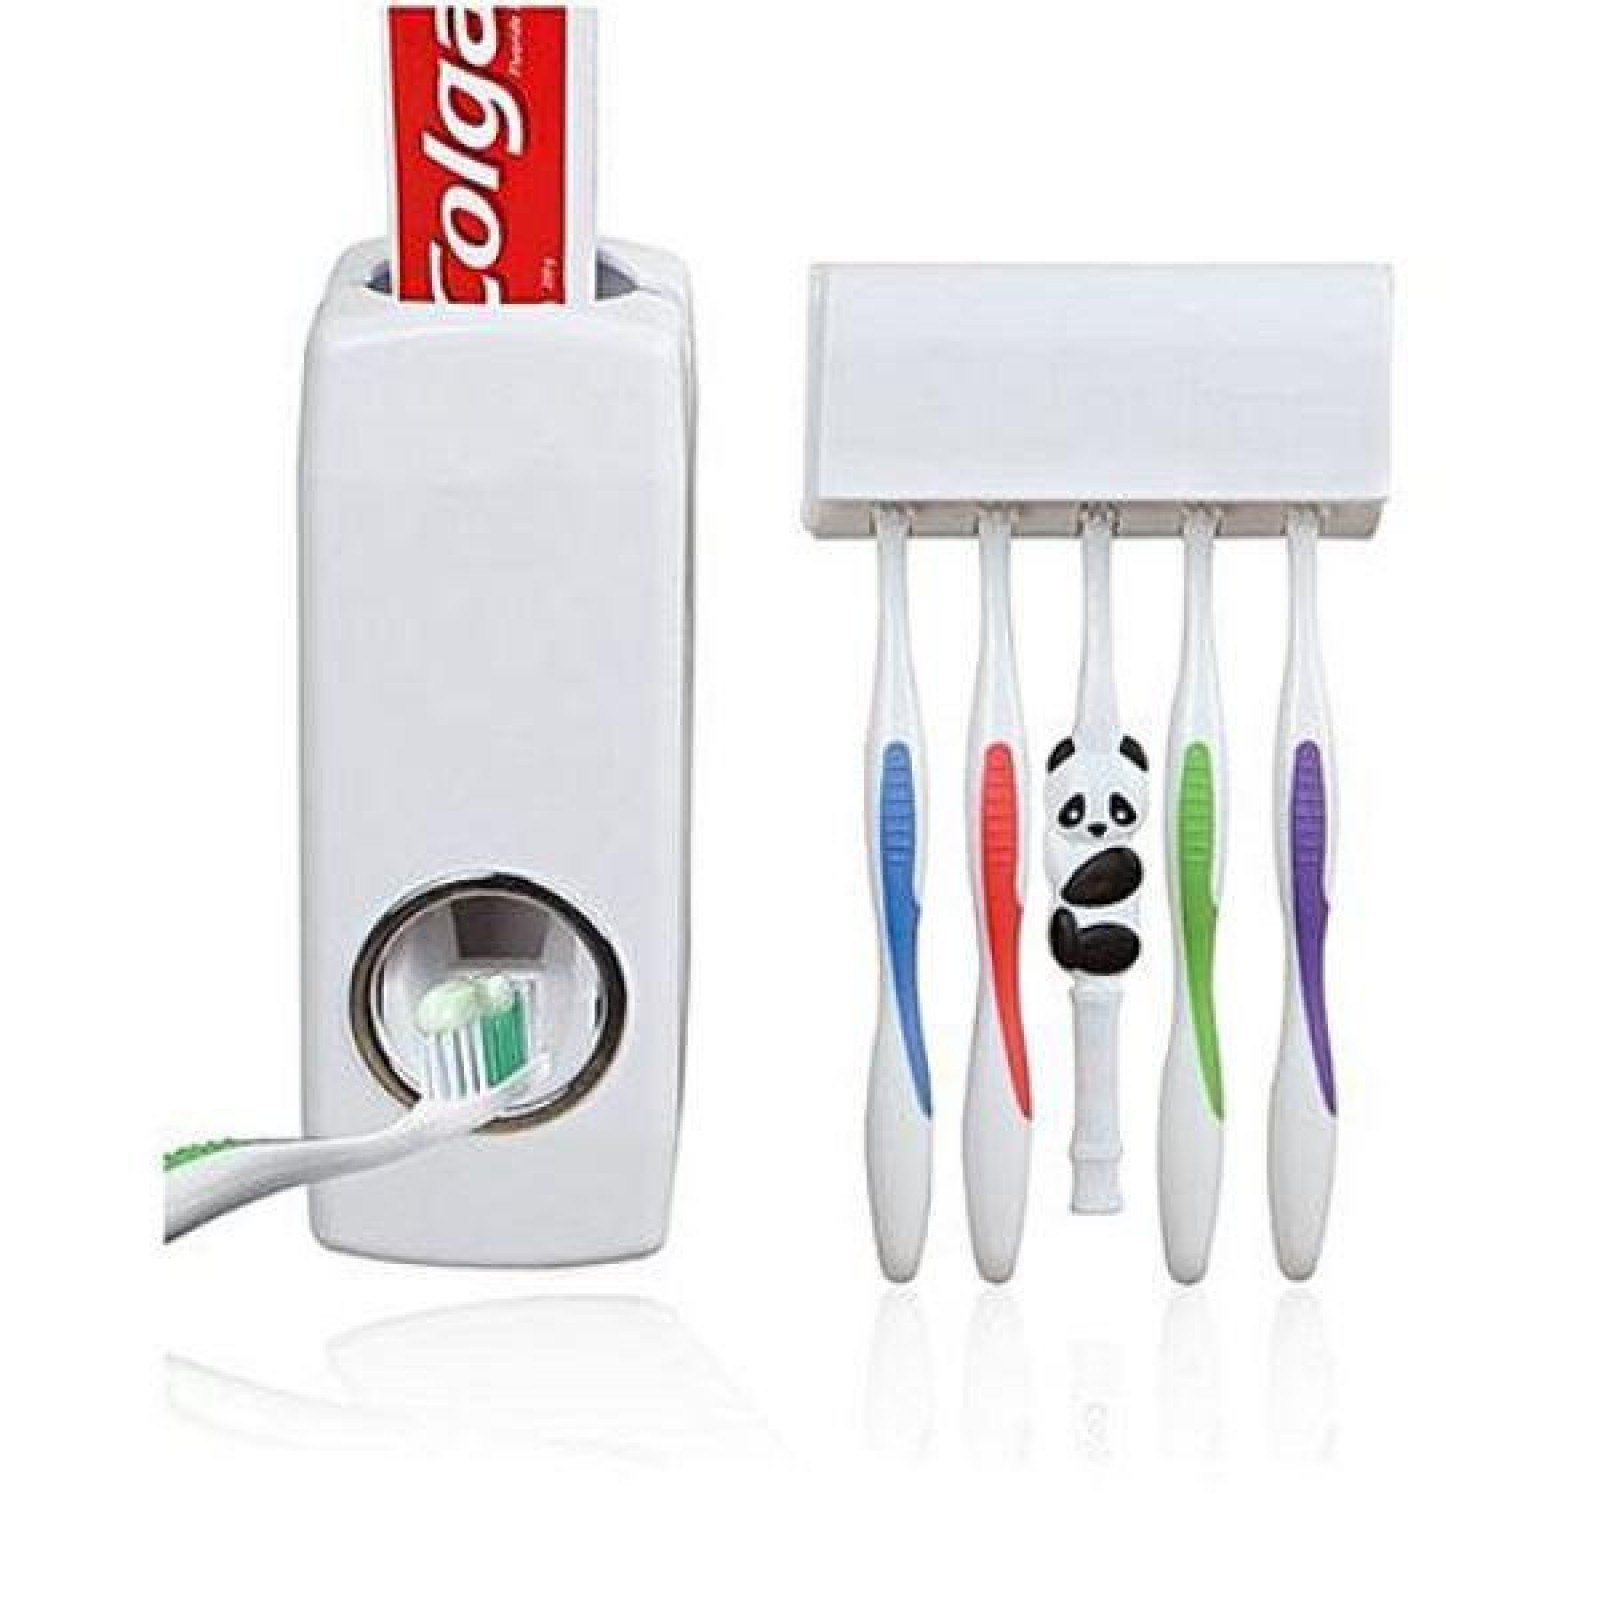 Диспенсер для зубной пасты и держатель зубных щеток SKL11-187093